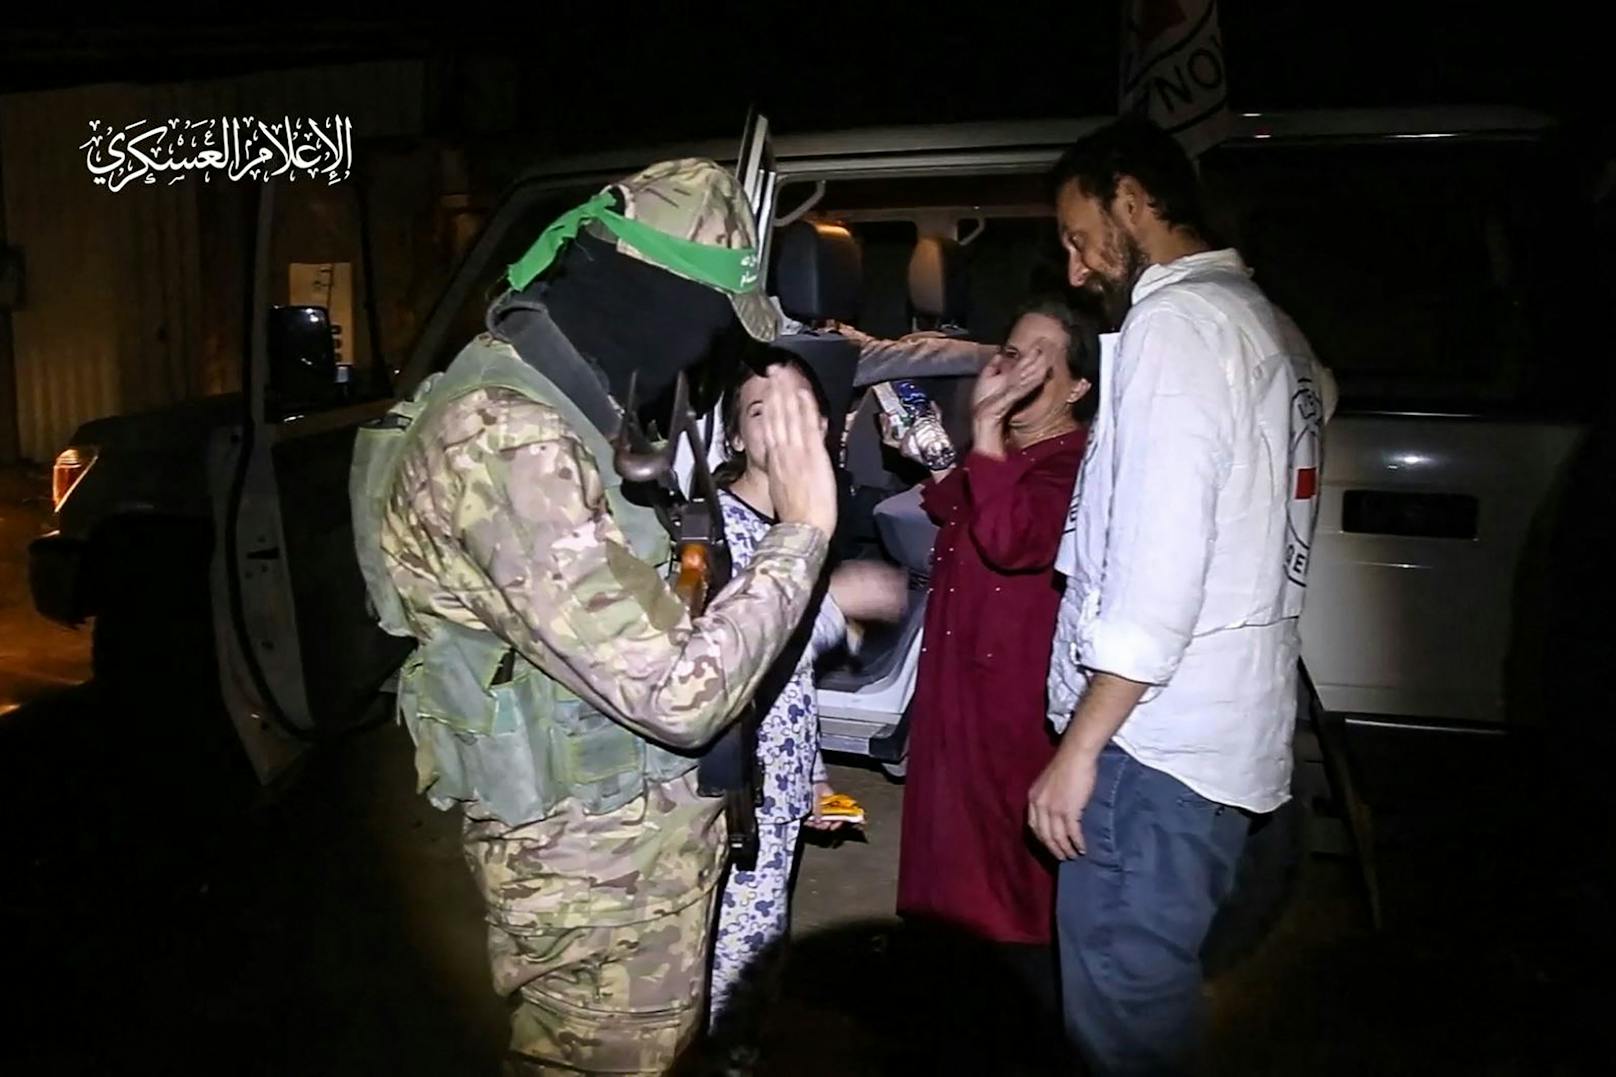 Ein Hamas-Terrorist verabschiedete sich nett und freundlich von einer Geisel – die Frau winkte zurück.